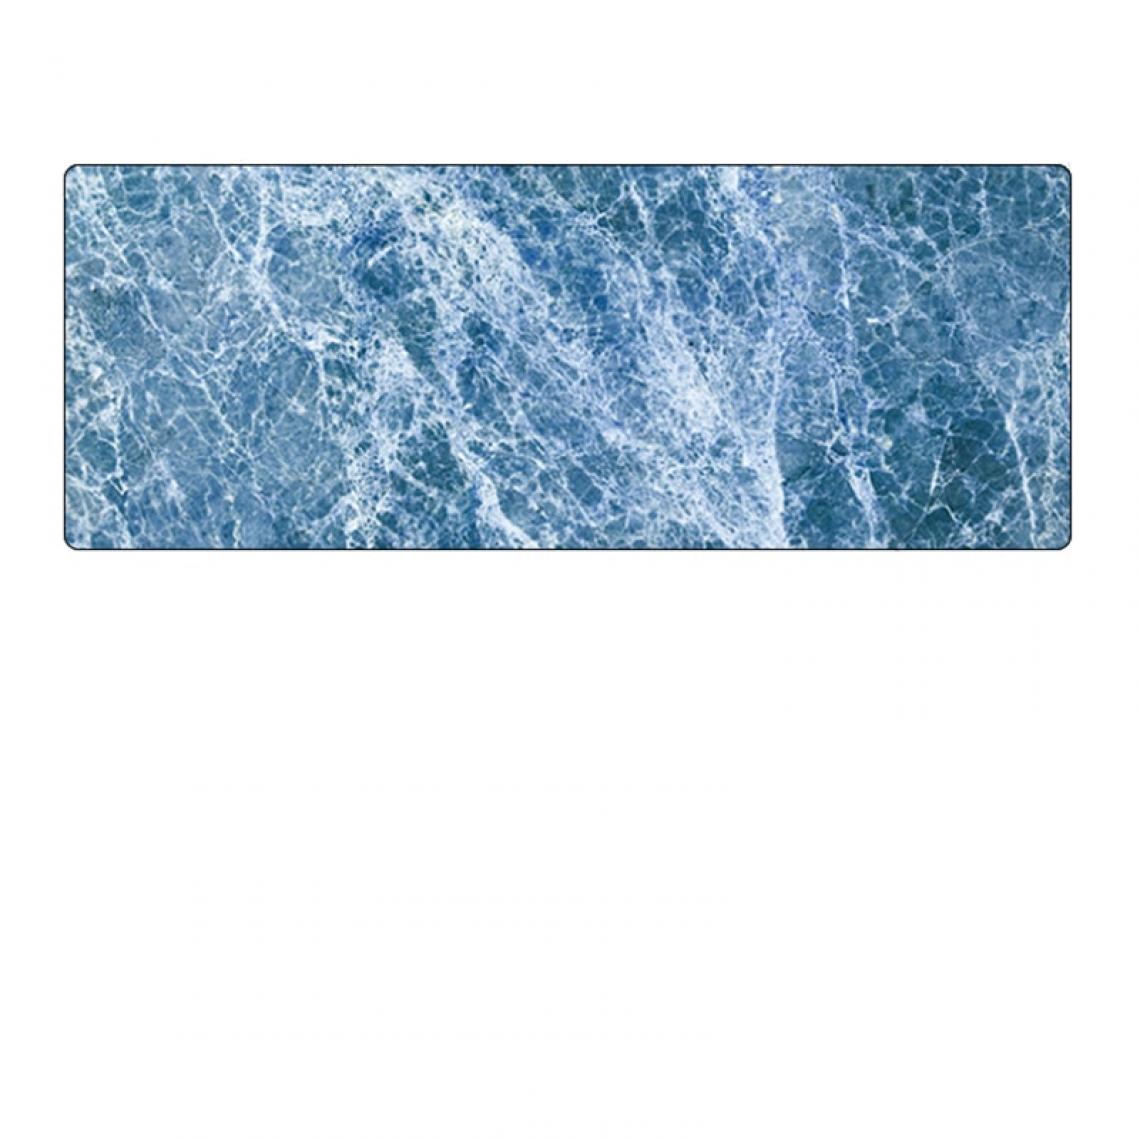 Universal - Tapis de souris en marbre 800x300mm XL Bureau Ordinateur portable Clavier Jeu Gamer Tapis de souris Gros jeu Souris en carton(Bleu) - Tapis de souris